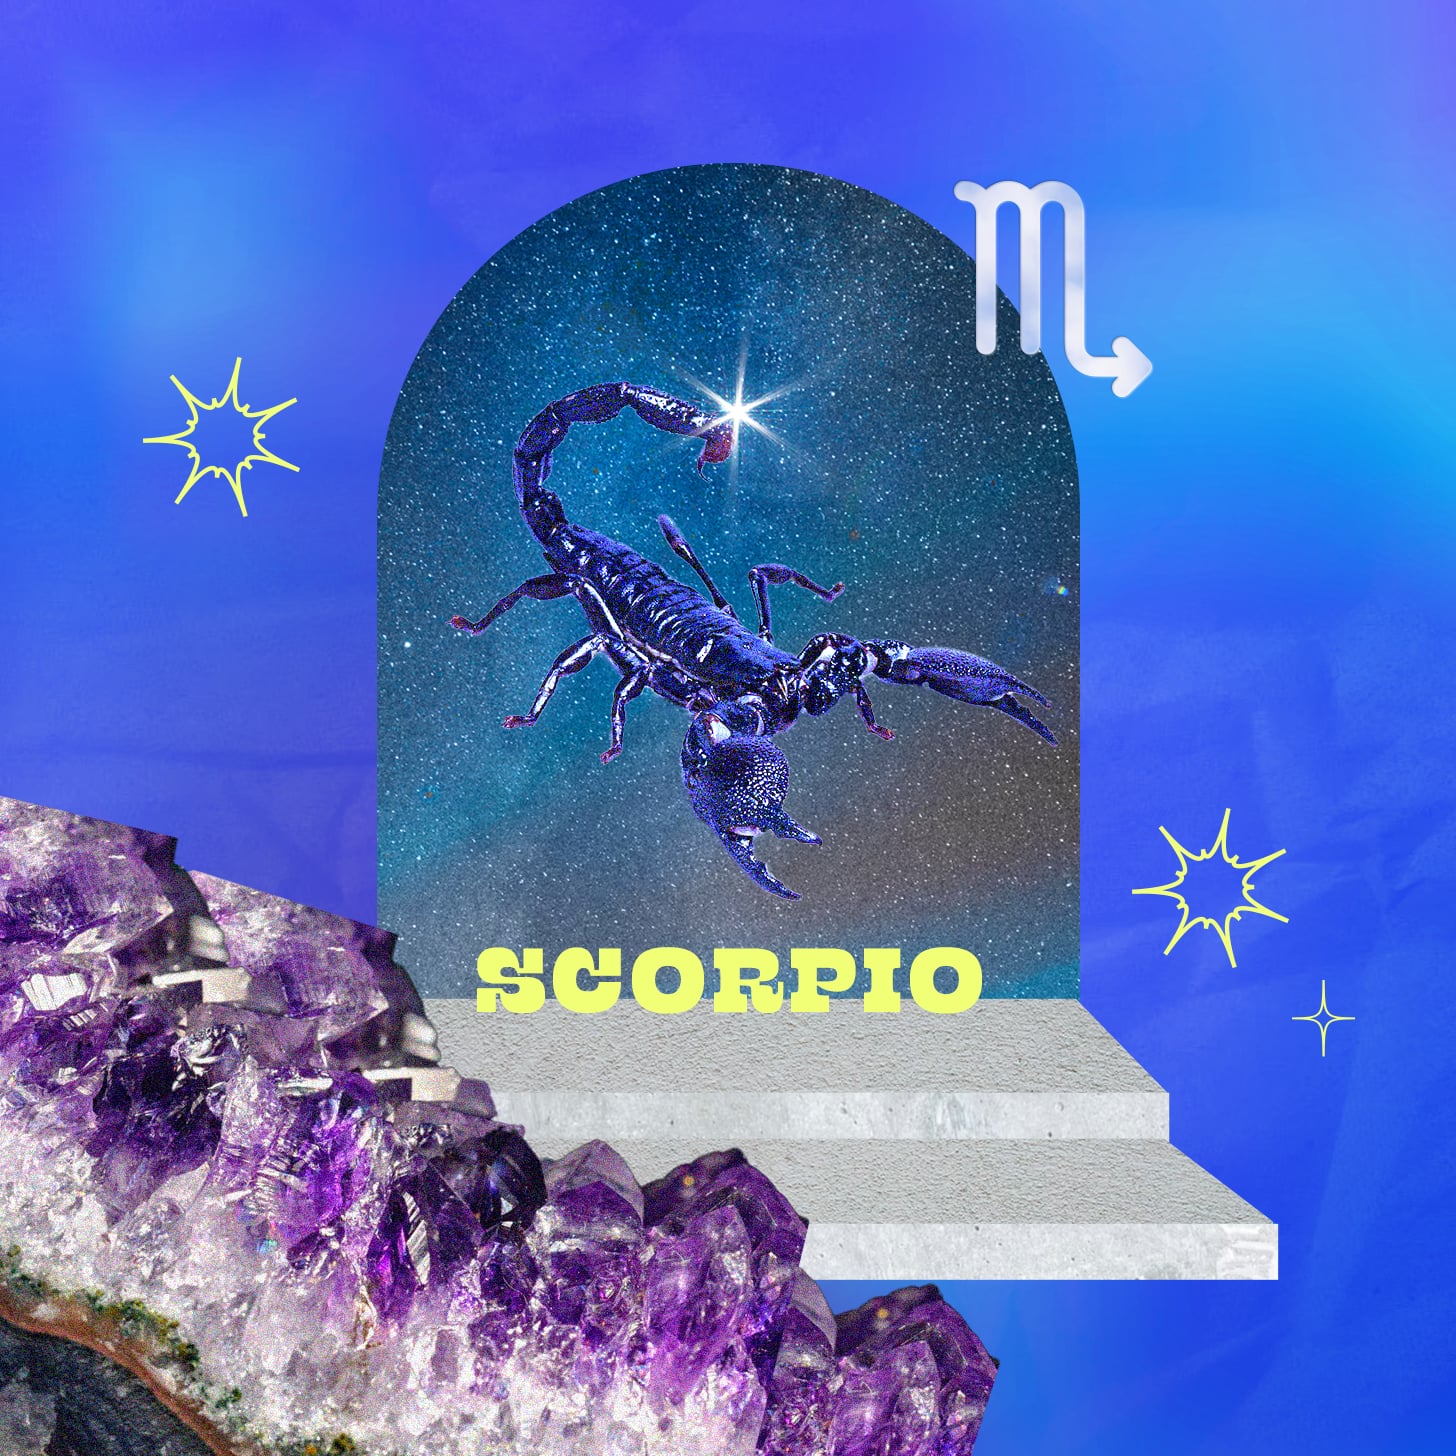 Scorpio weekly horoscope for week of August 28, 2022